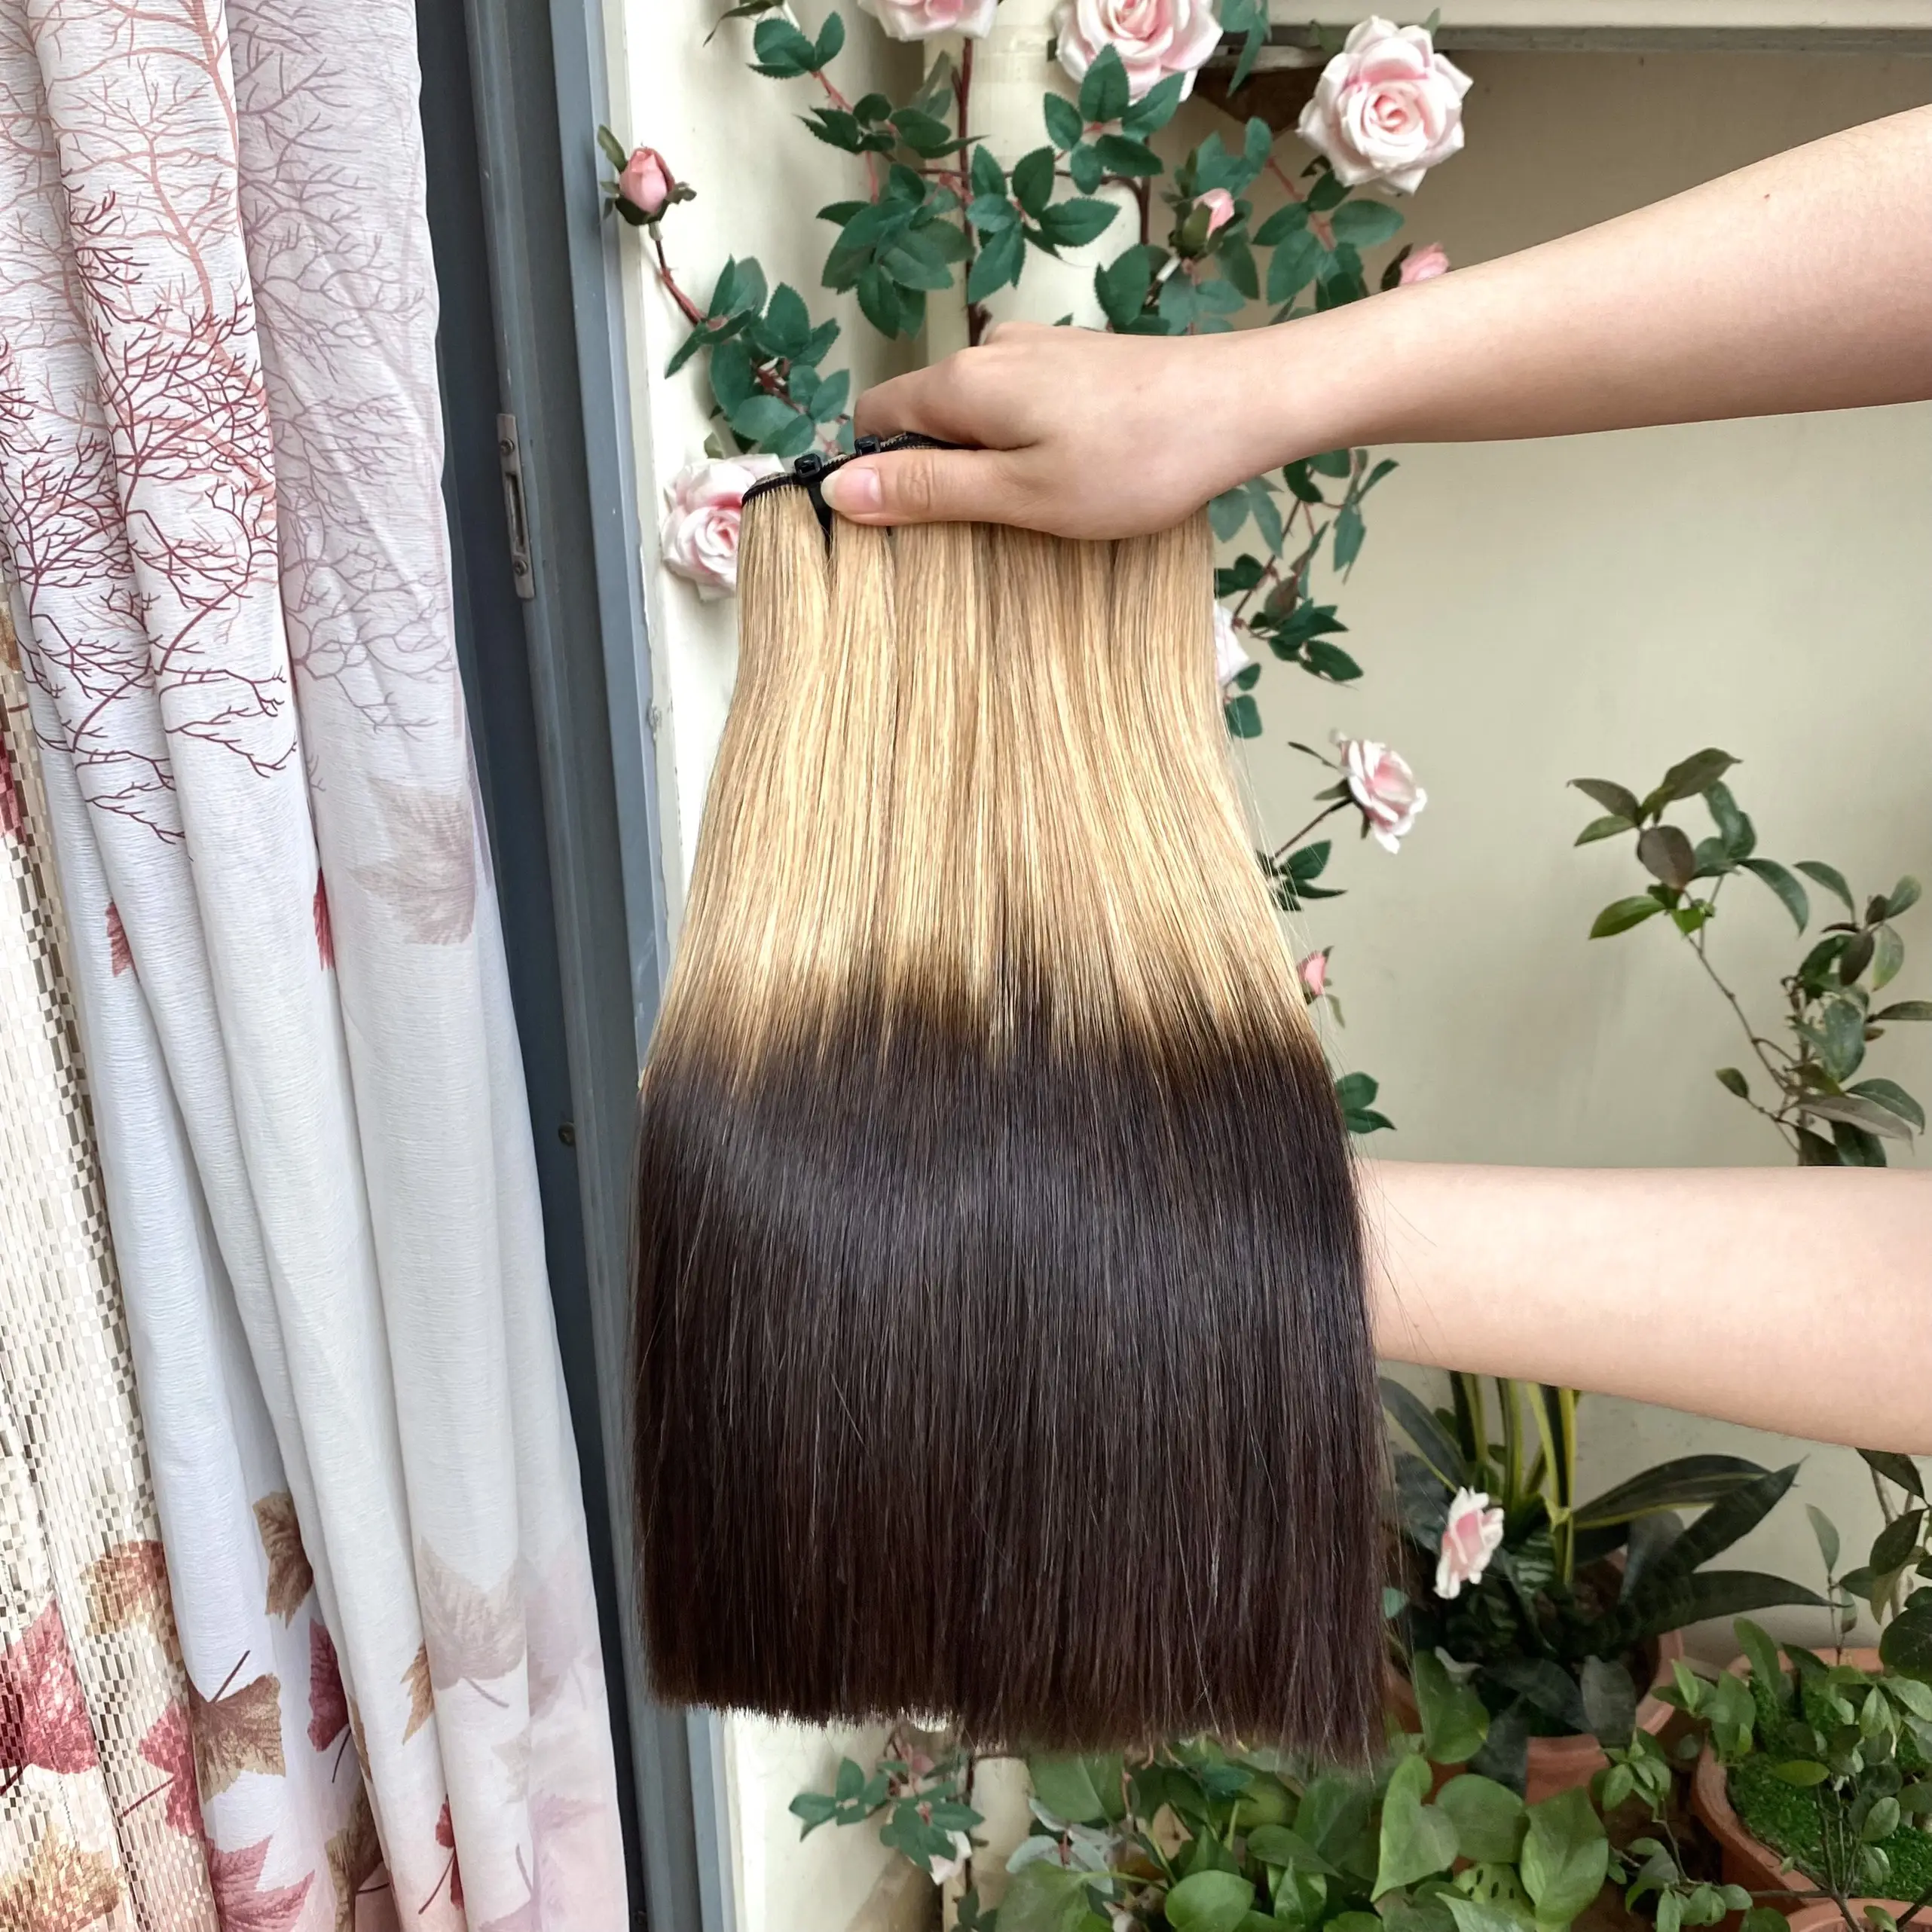 GROSSHANDEL Lyn Marke produziert hochwertige jungfräuliche Haar verlängerungen Knochen glattes Haar mehrfarbige Locken Haar verlängerung glänzend weich